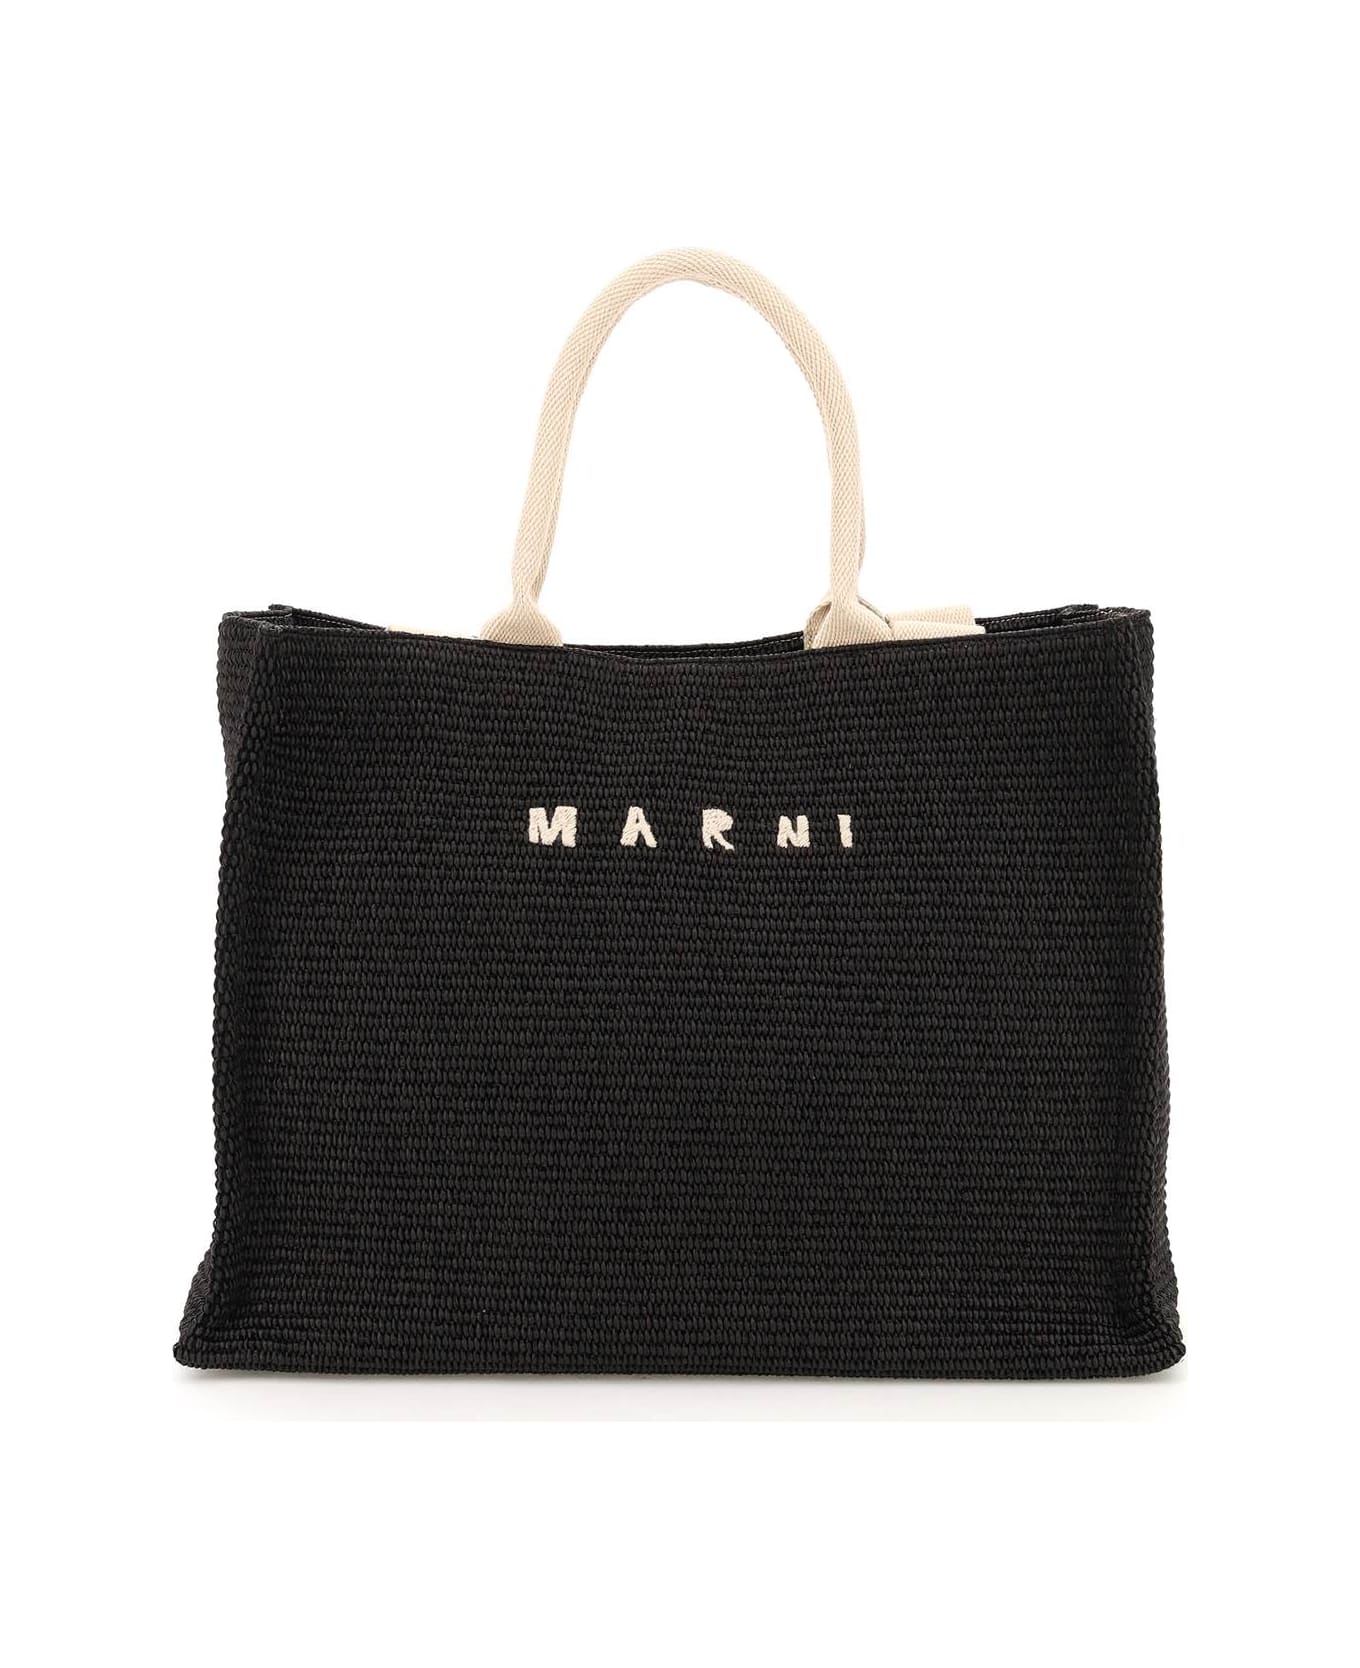 Marni 'tote' Shopping Bag - BLACK NATURAL (Black) トートバッグ